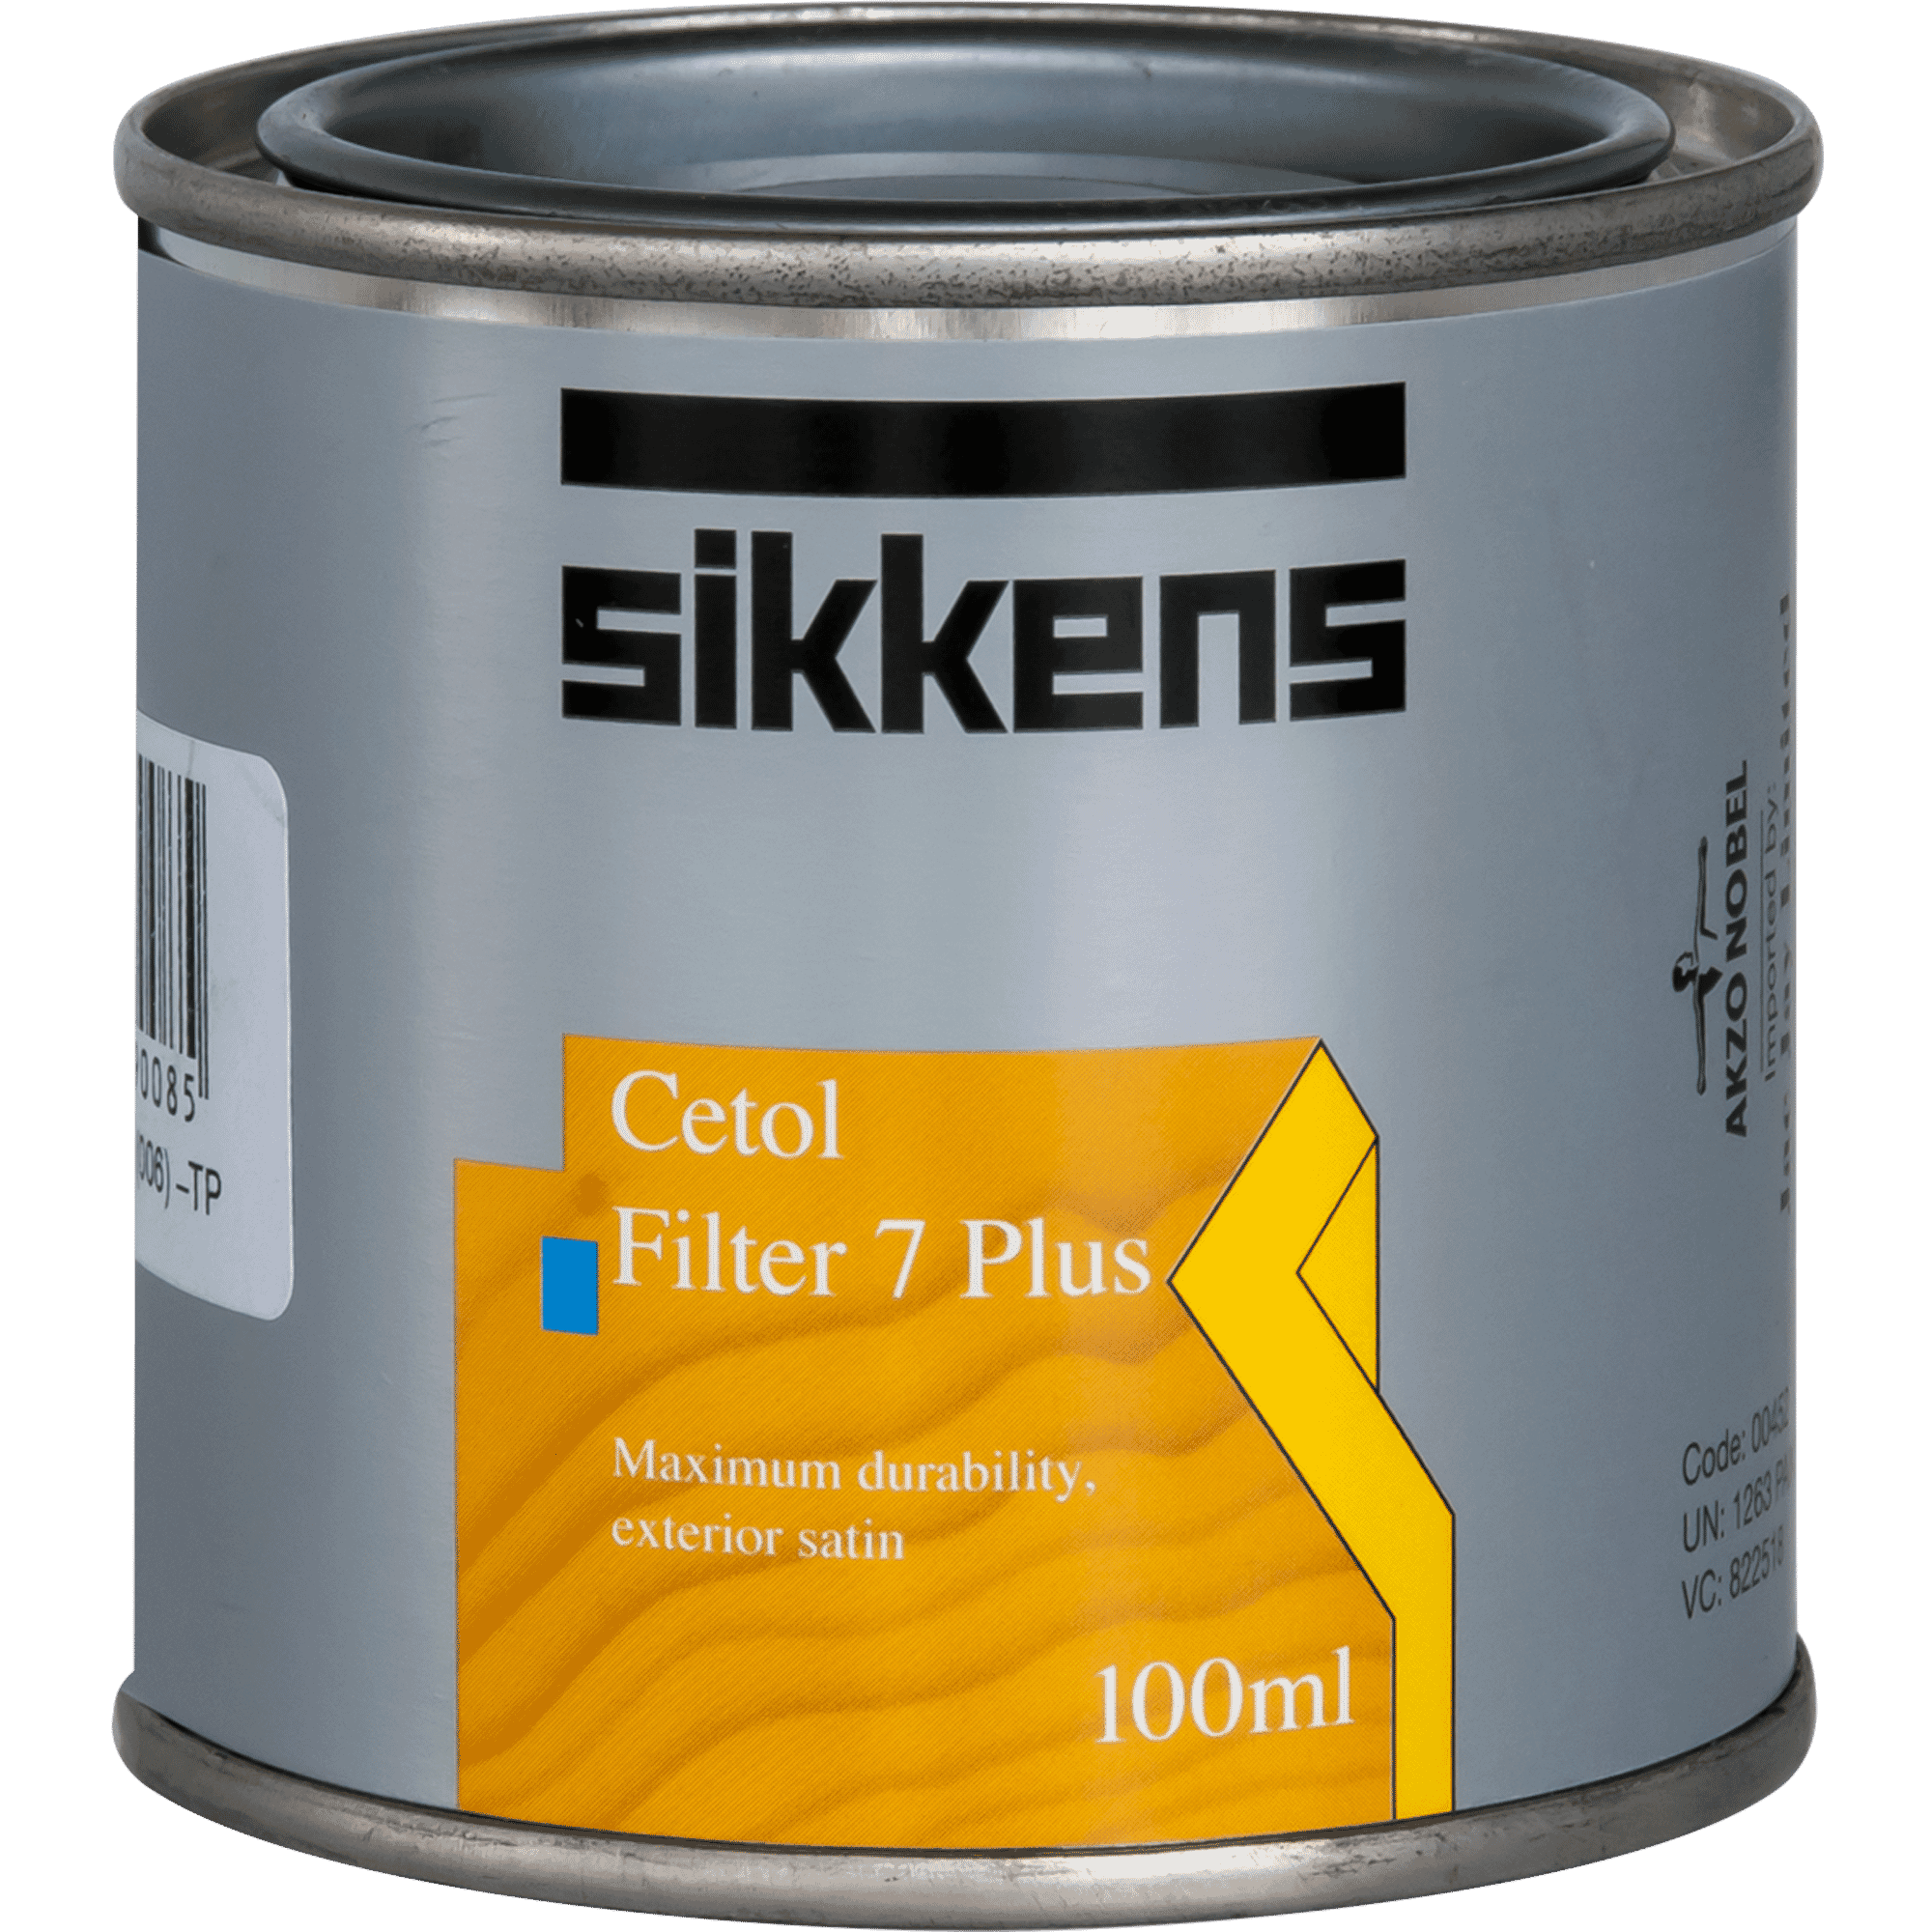 Sikkens Filter 7 Plus Silver Grey Test Pot